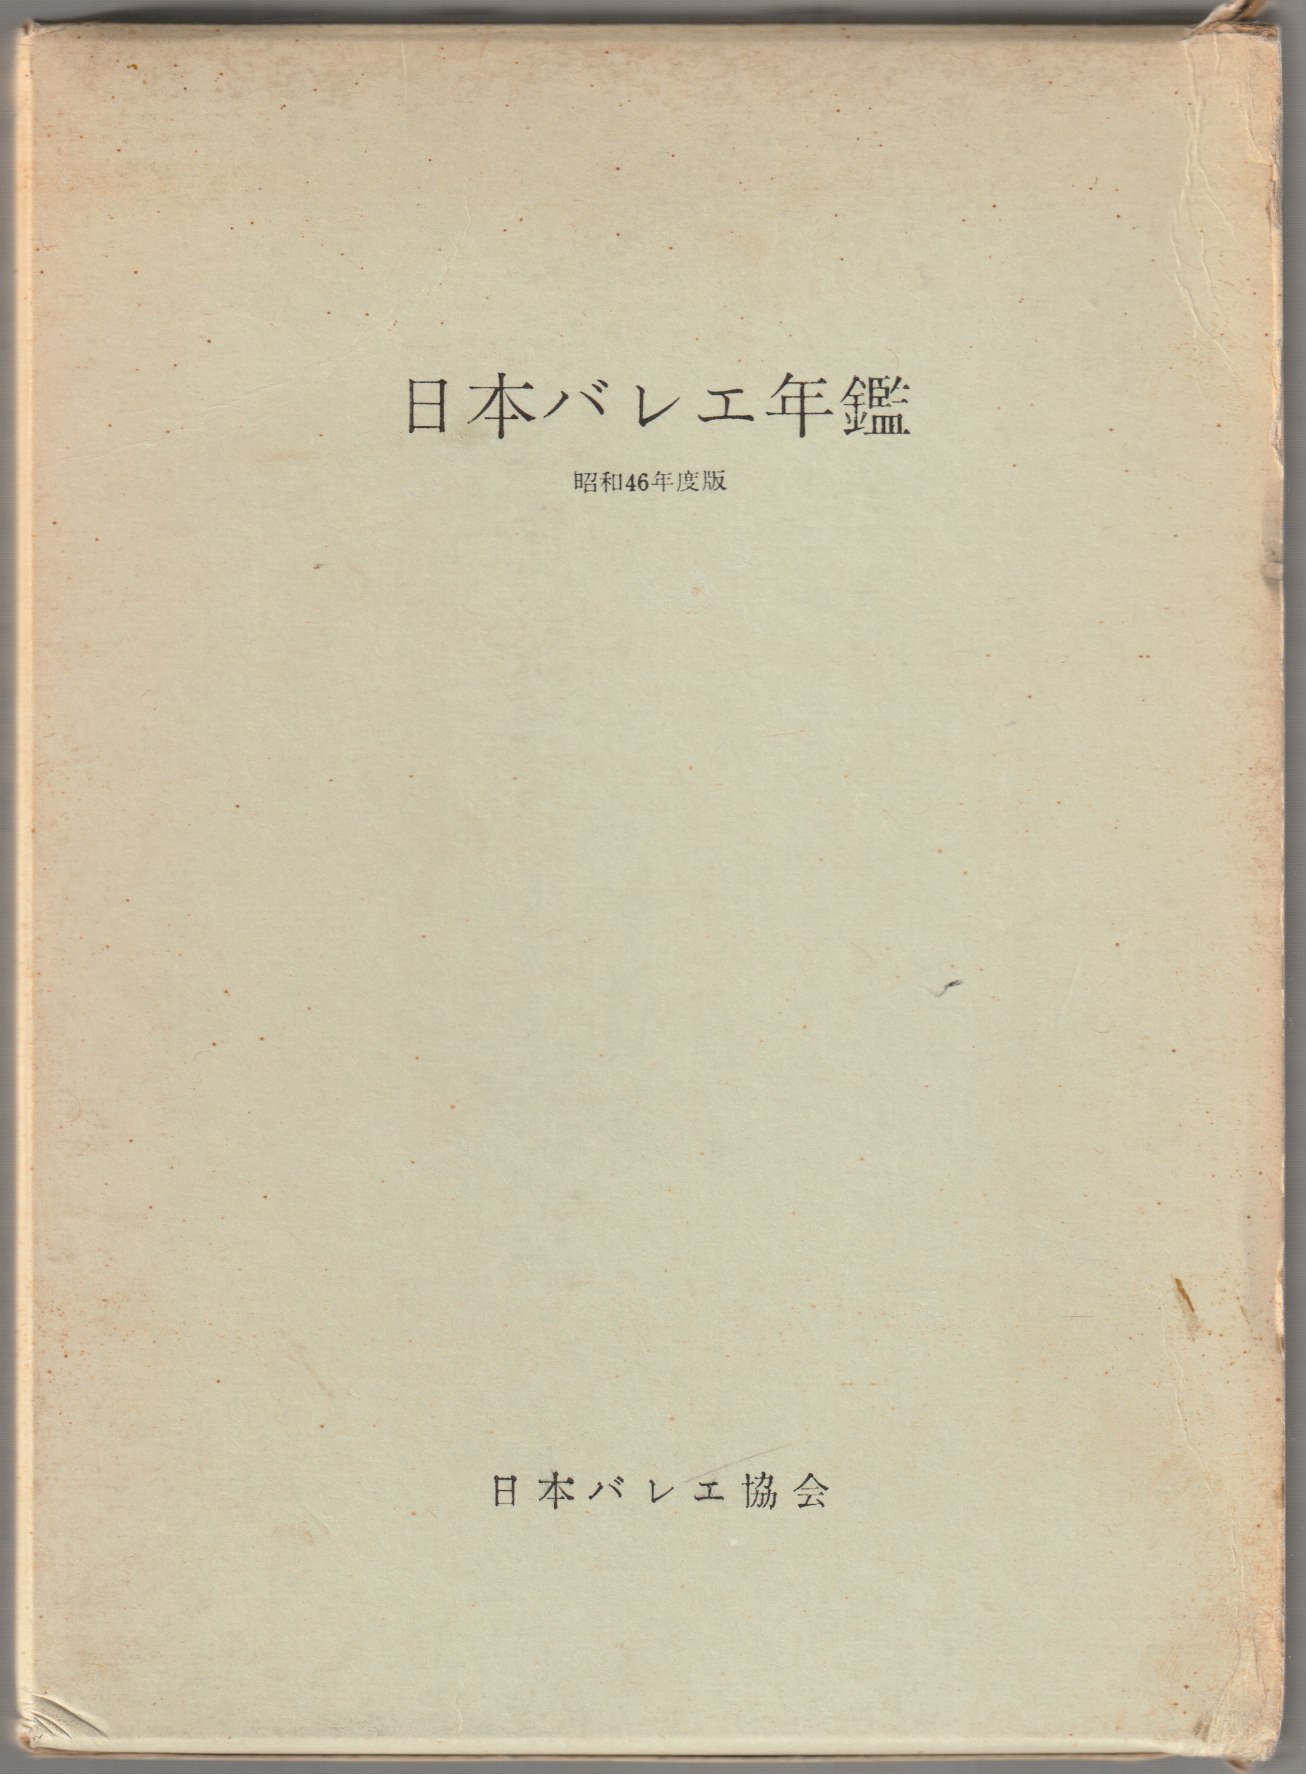 日本バレエ年鑑, 昭和46年度版